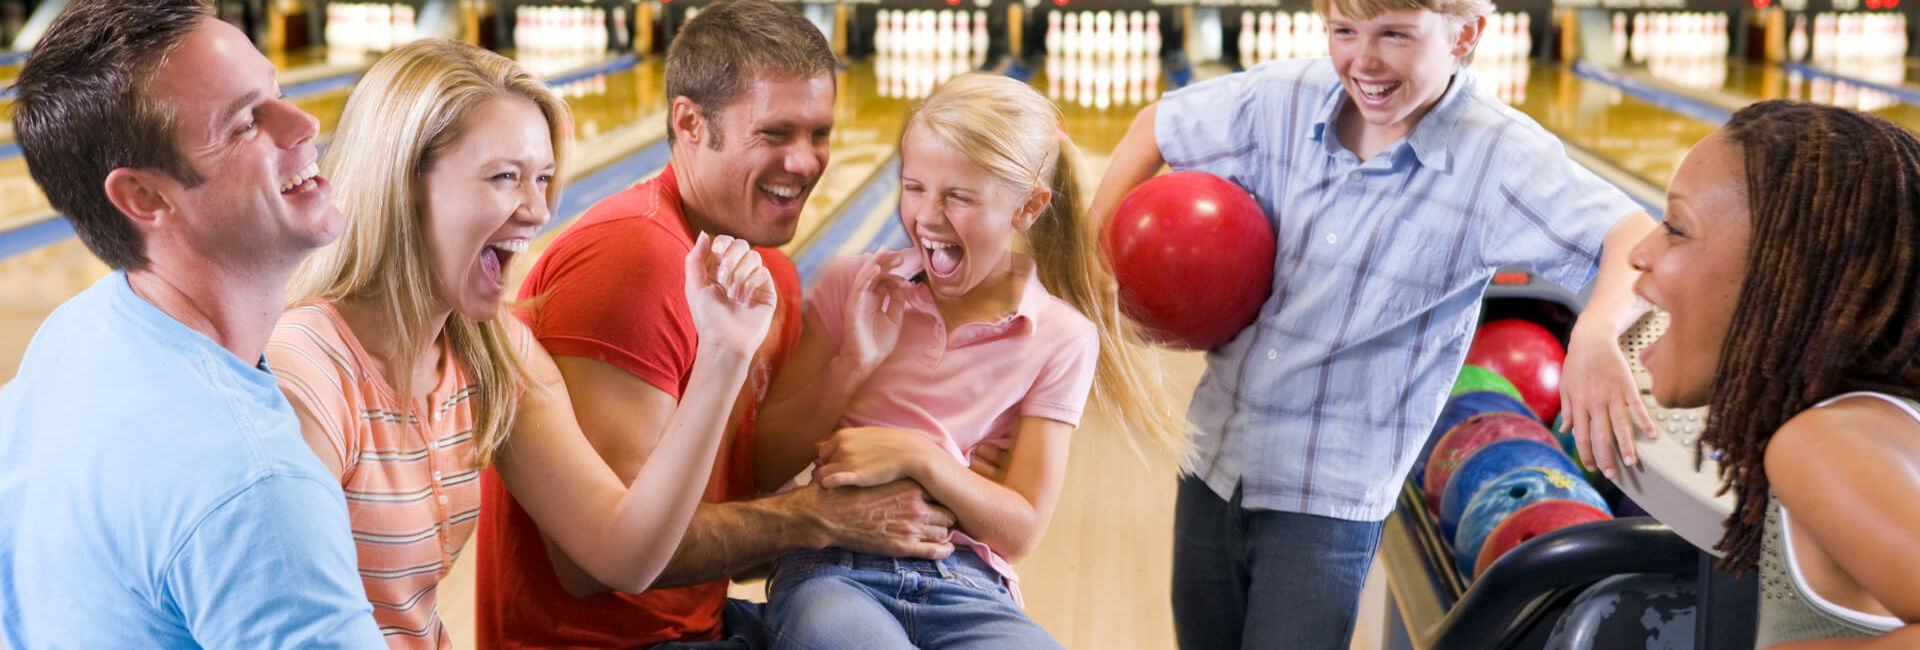 Family having fun bowling